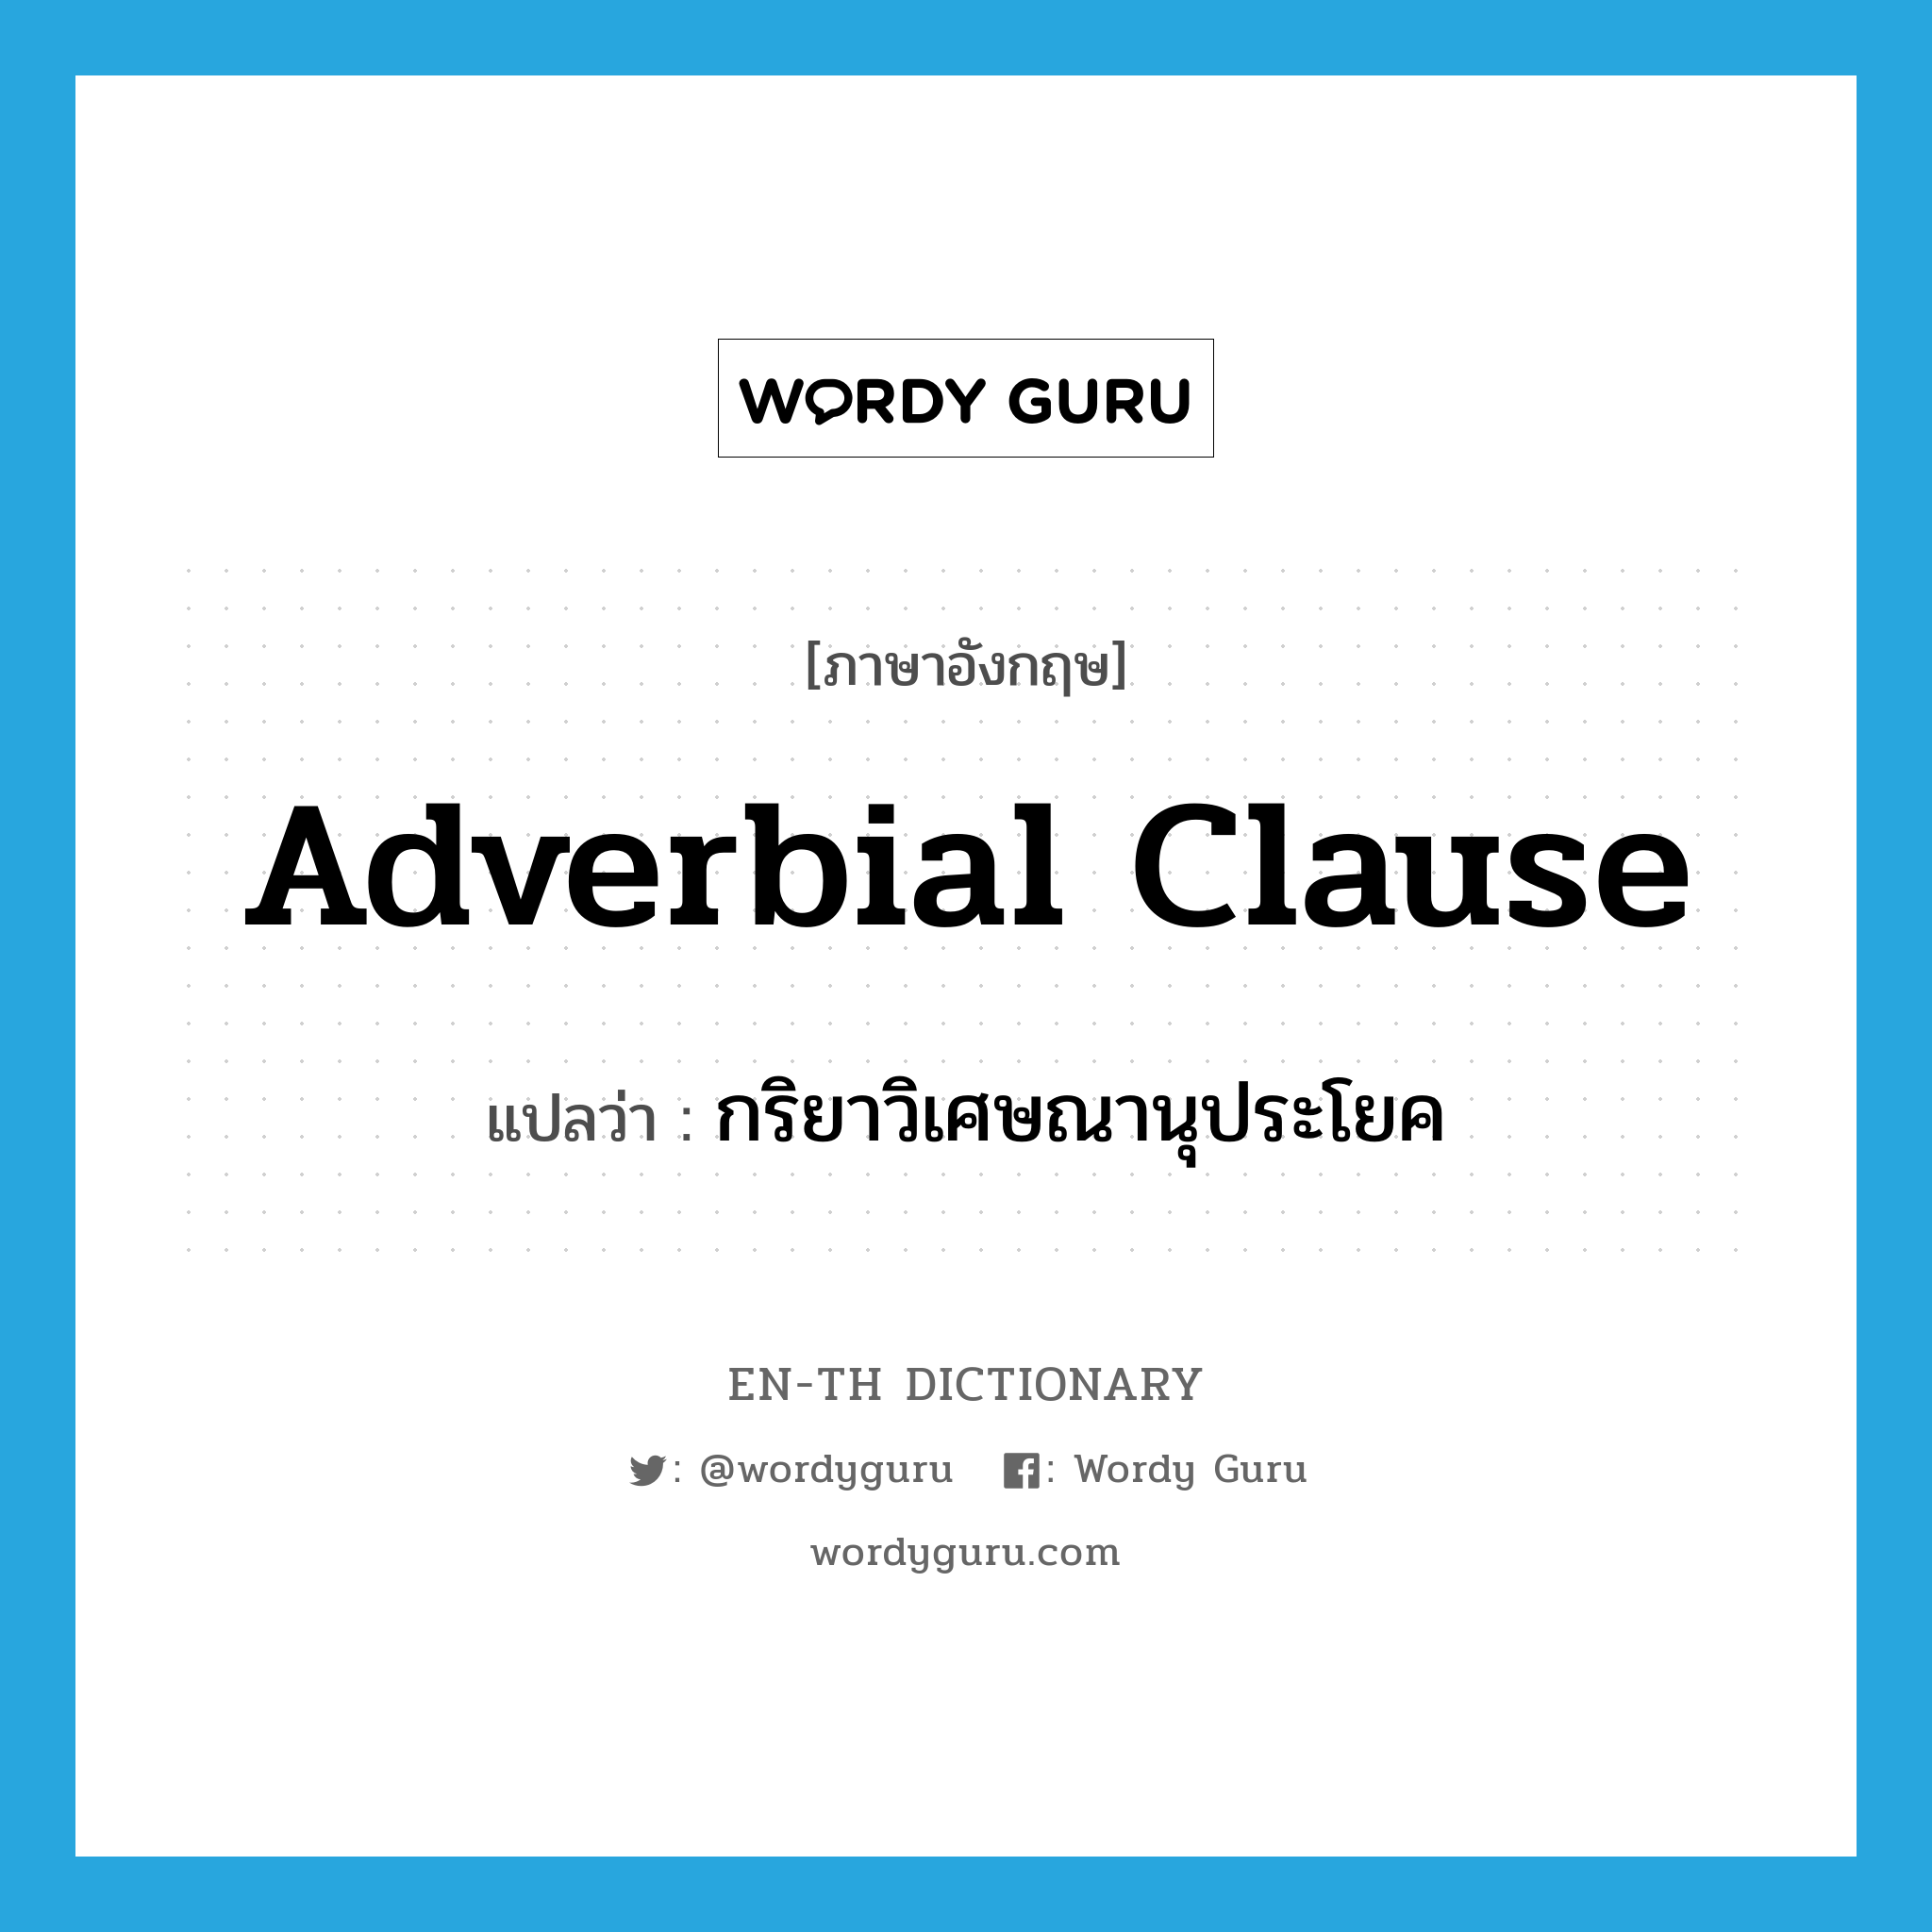 adverbial clause แปลว่า?, คำศัพท์ภาษาอังกฤษ adverbial clause แปลว่า กริยาวิเศษณานุประโยค ประเภท N หมวด N